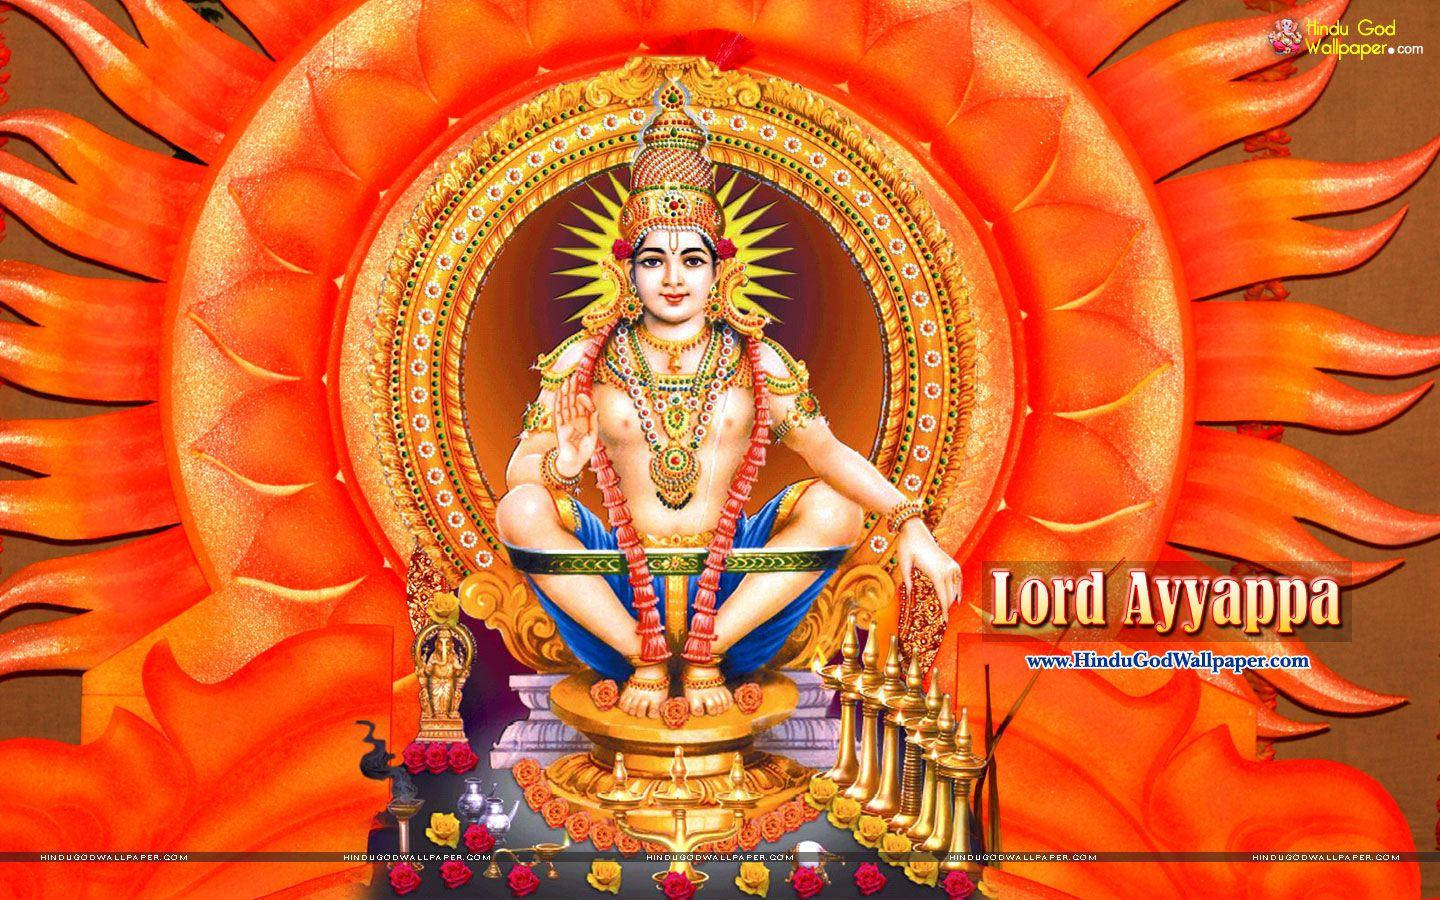 Lord Ayyappan Sun Halo Wallpaper